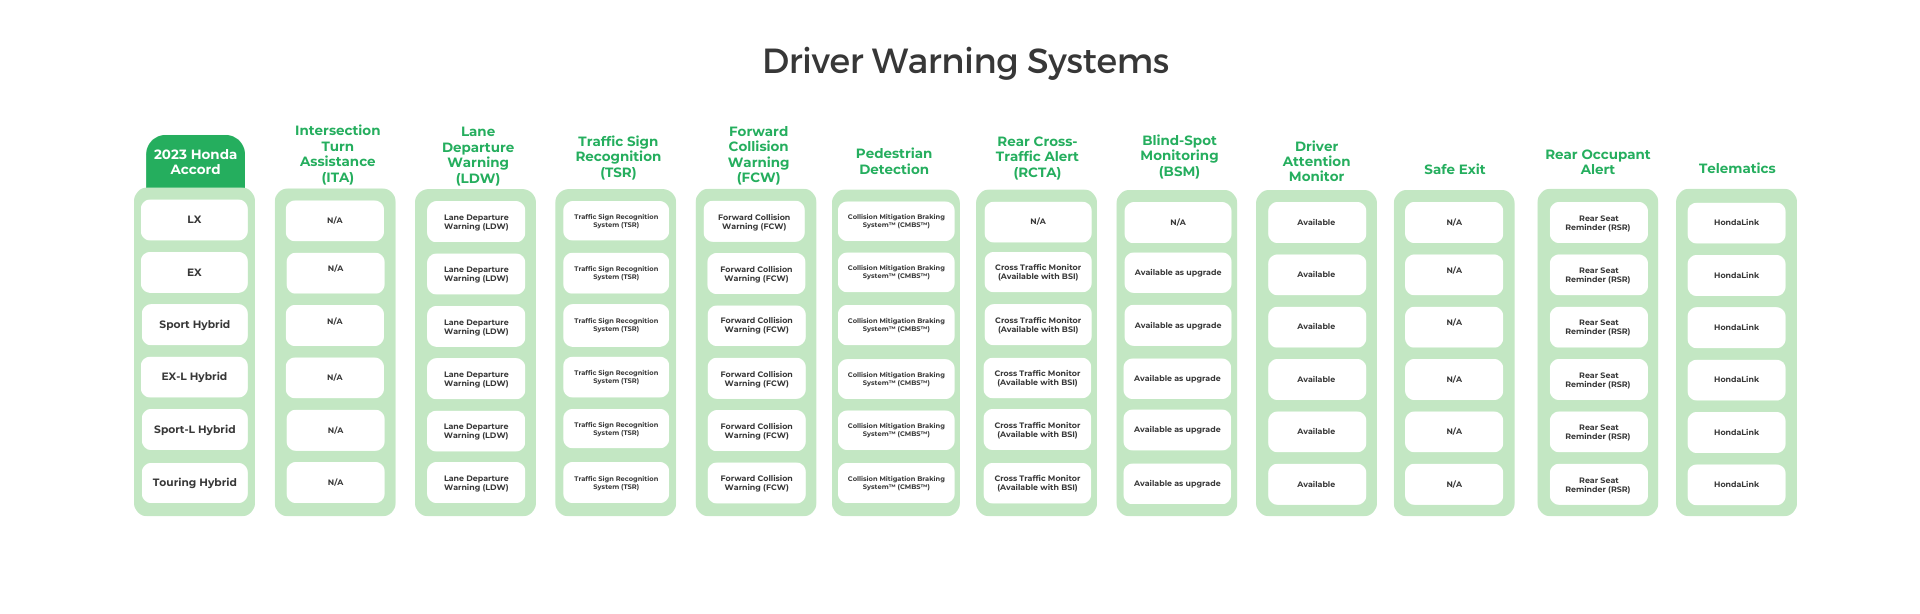 2023 Honda Accord Driver Warning Systems